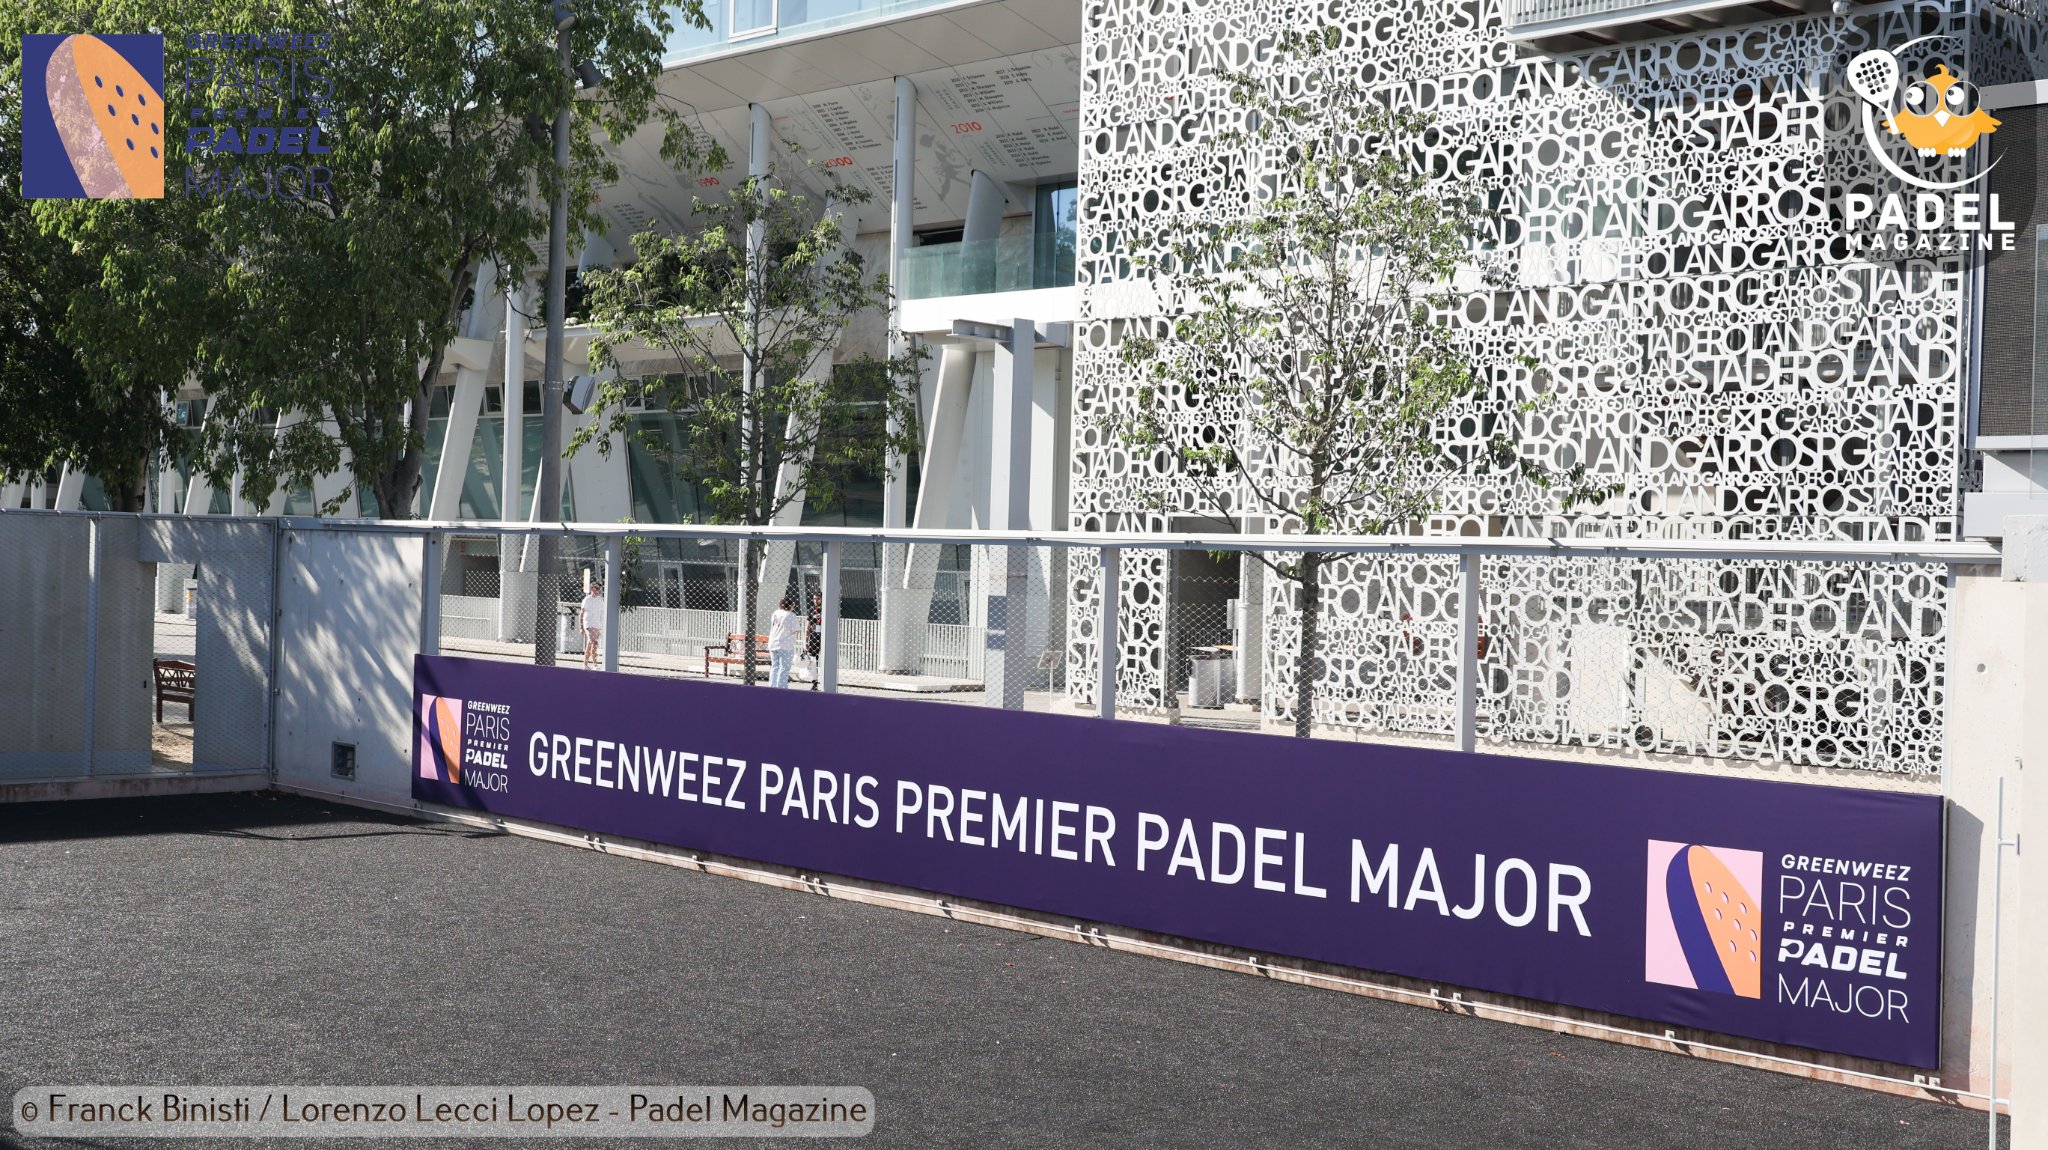 Greenweez Paris Premier Padel Major : resultats del trimestre